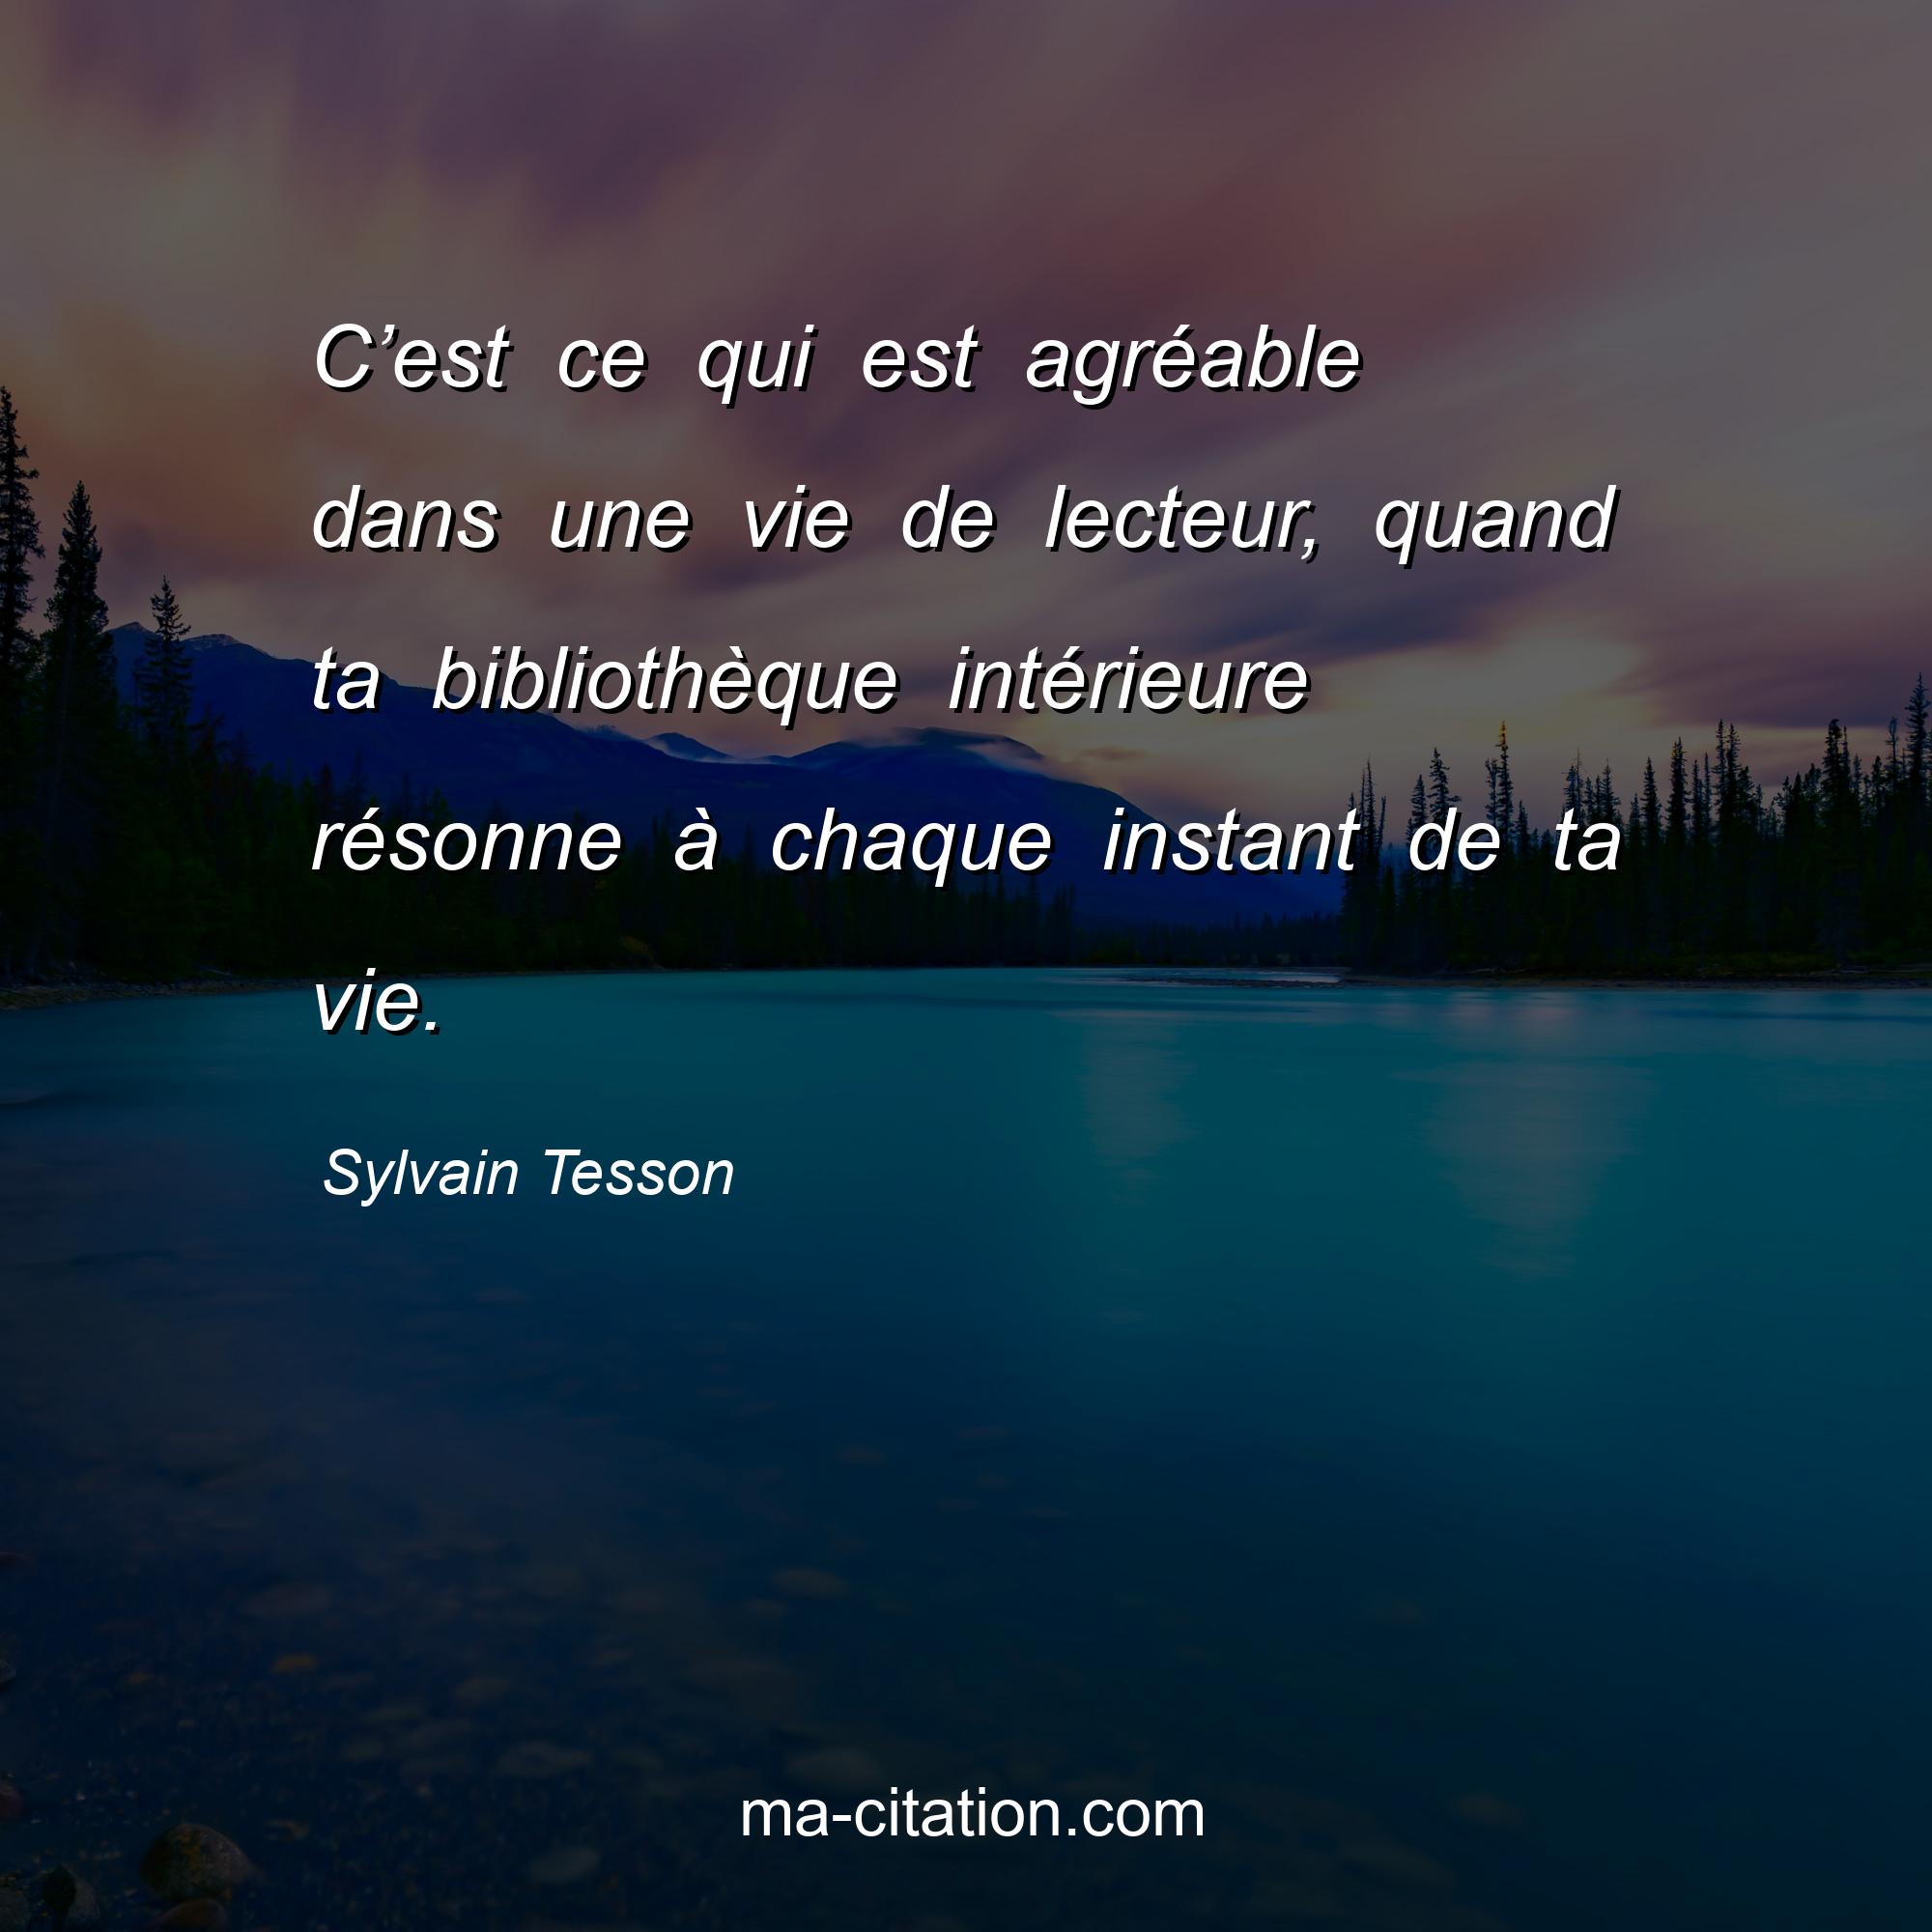 Sylvain Tesson : C’est ce qui est agréable dans une vie de lecteur, quand ta bibliothèque intérieure résonne à chaque instant de ta vie.